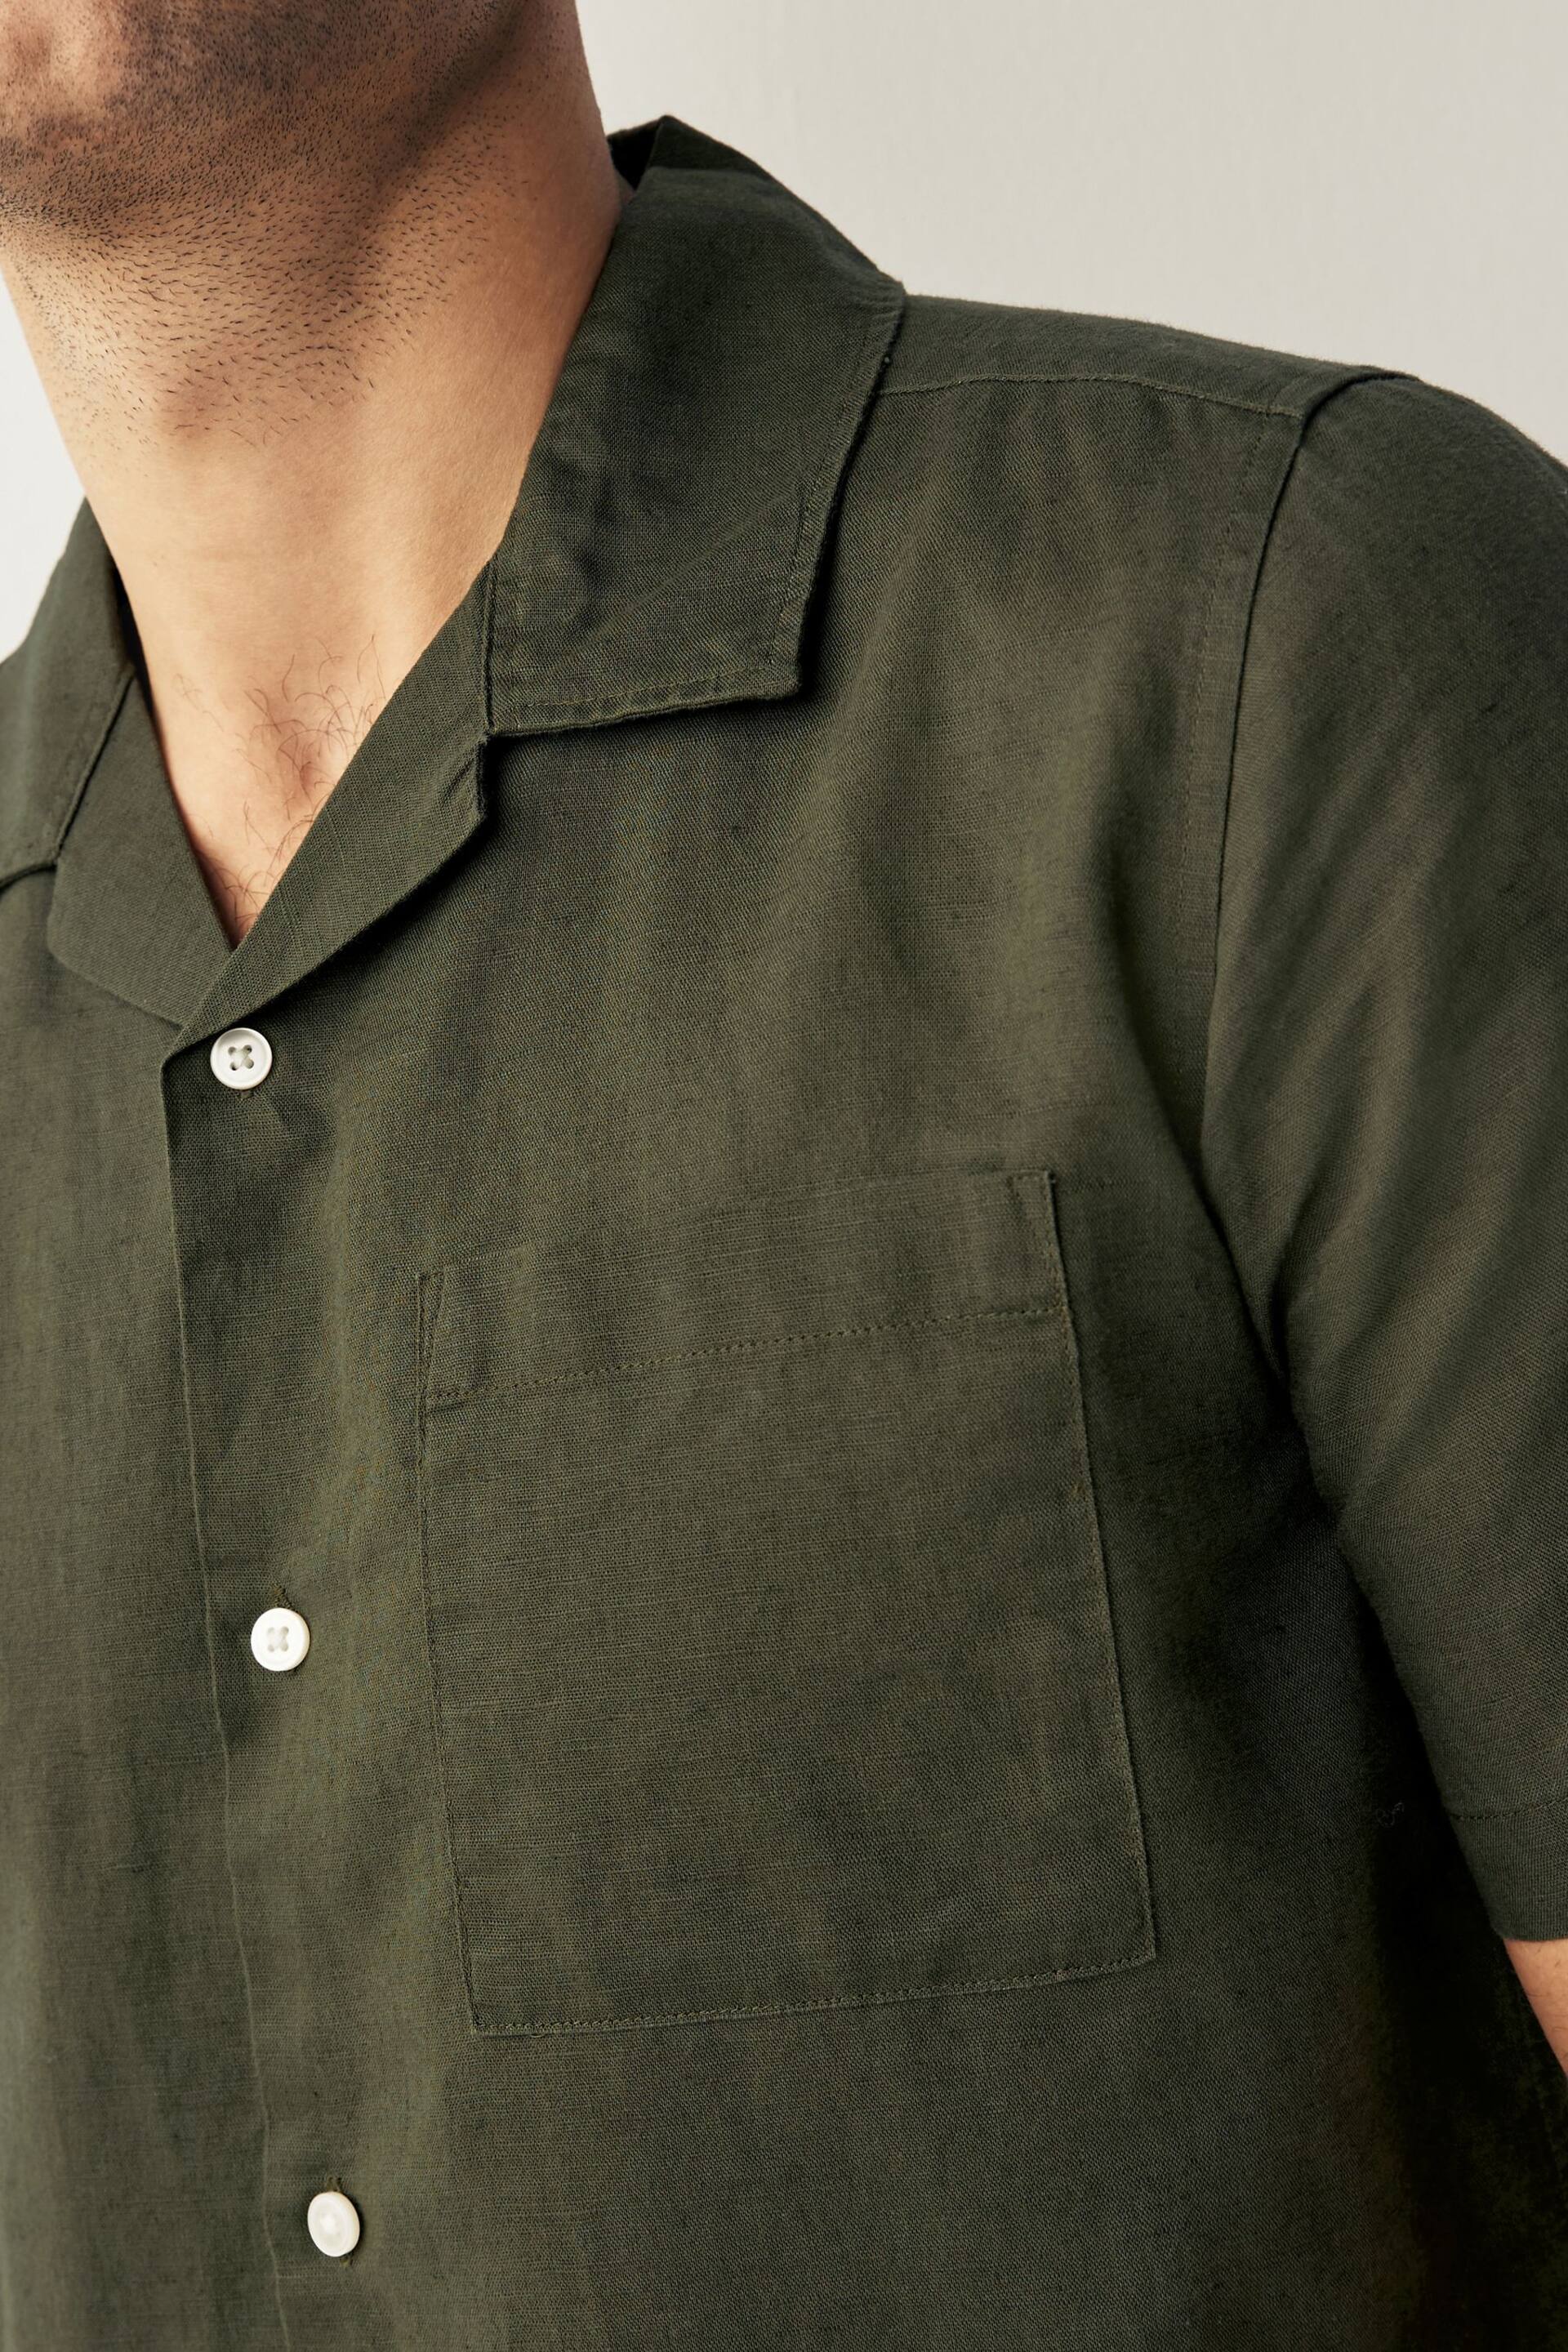 Green Cuban Collar Linen Blend Short Sleeve Shirt - Image 4 of 7